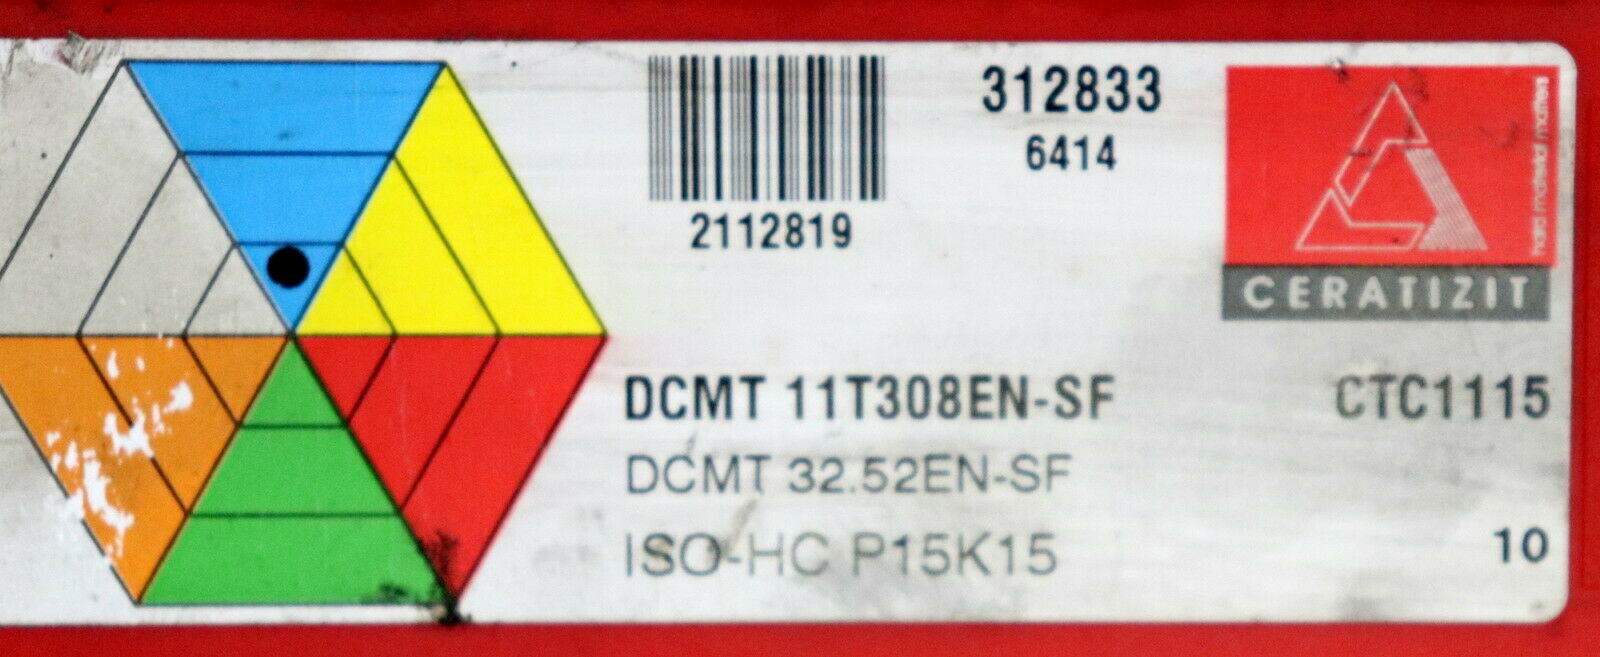 CERATIZIT 10 Stück Wendeplatten DCMT 11T308EN-SF DCMT 32.52EN-SF ISO-HC P15K15